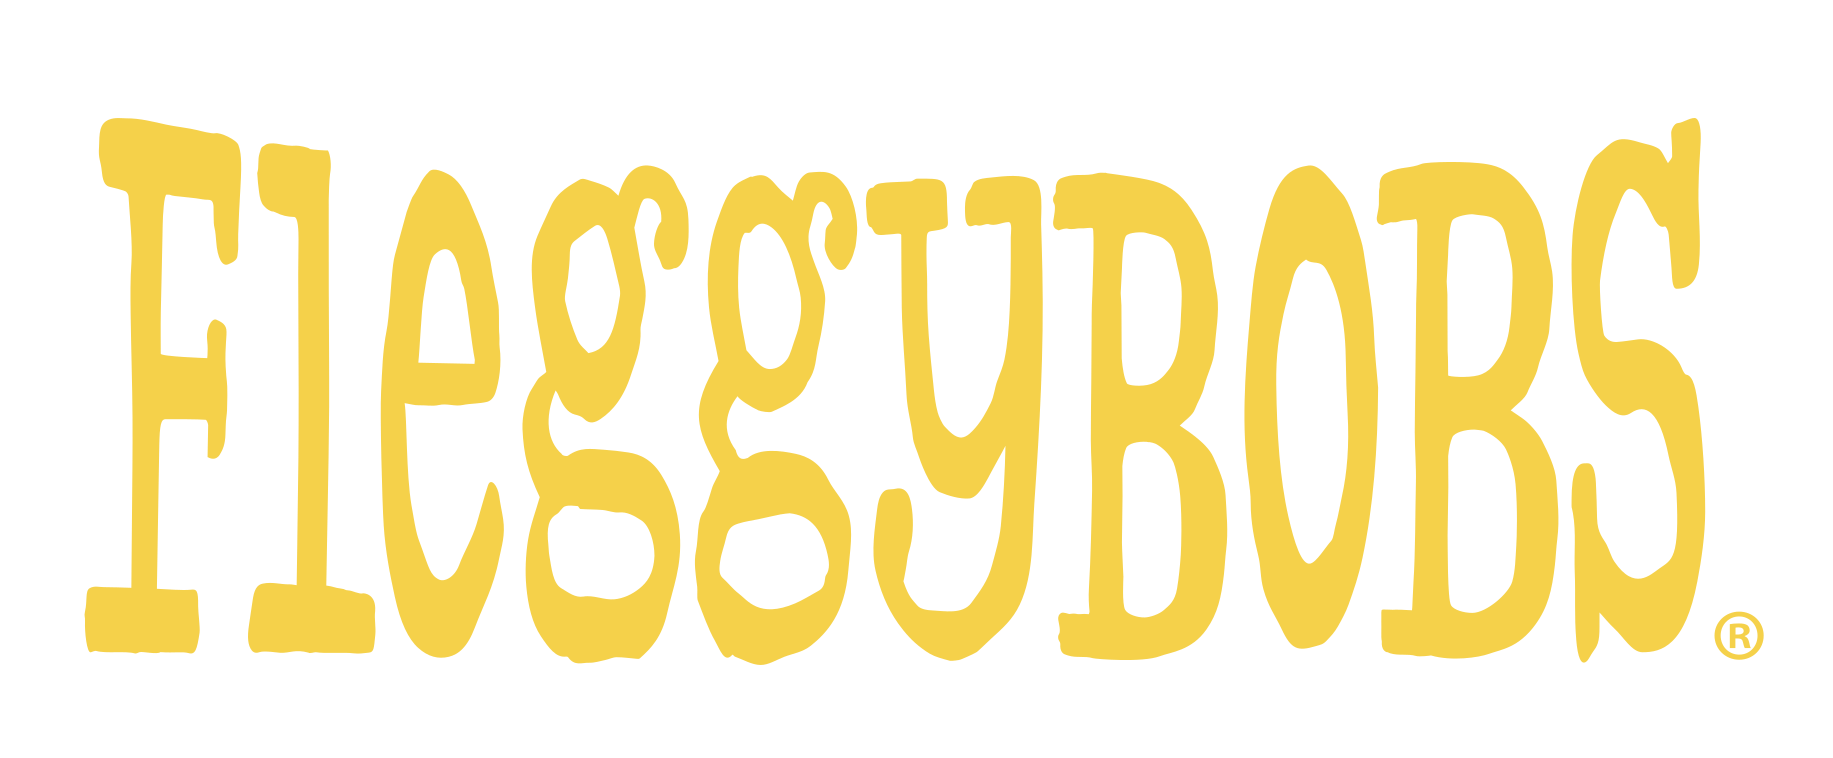 Fleggybob Logo